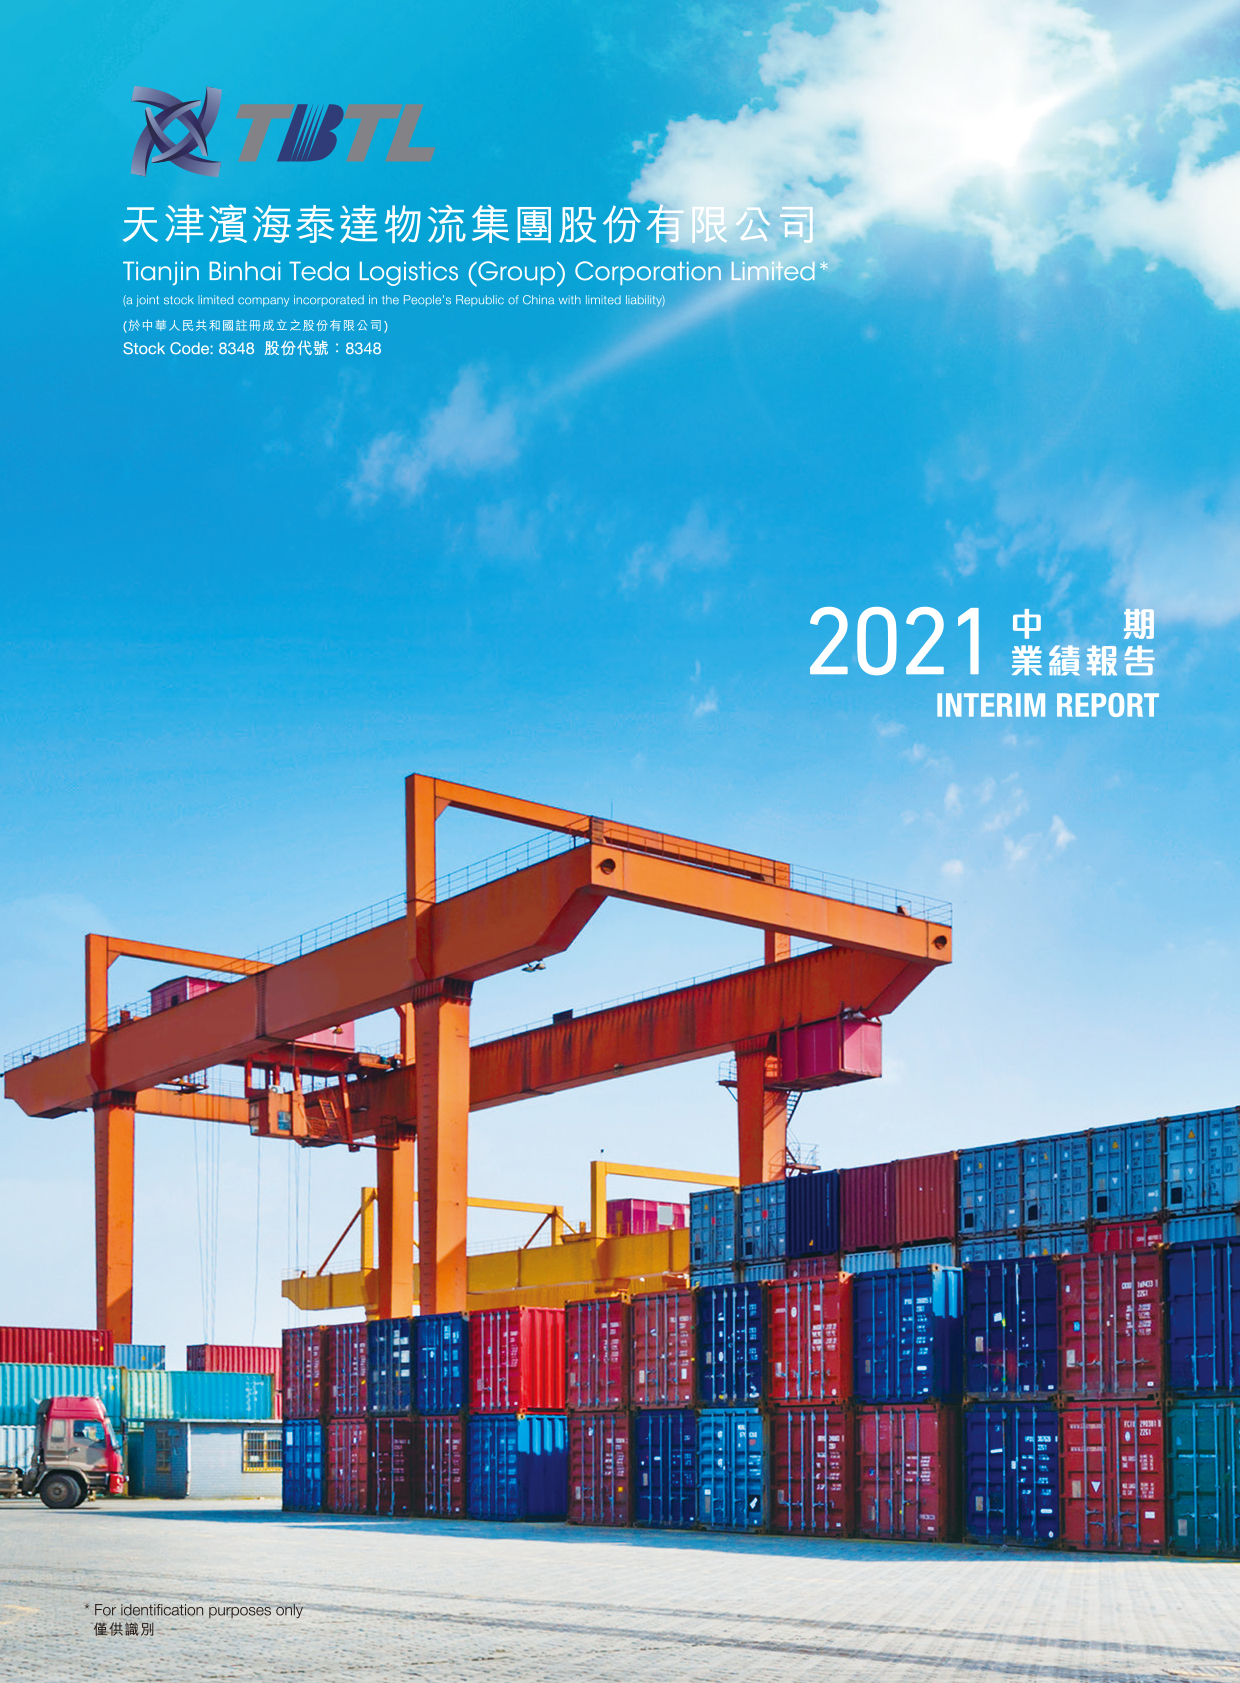 Tianjin Binhai Teda Logistics (Group) Corporation Limited